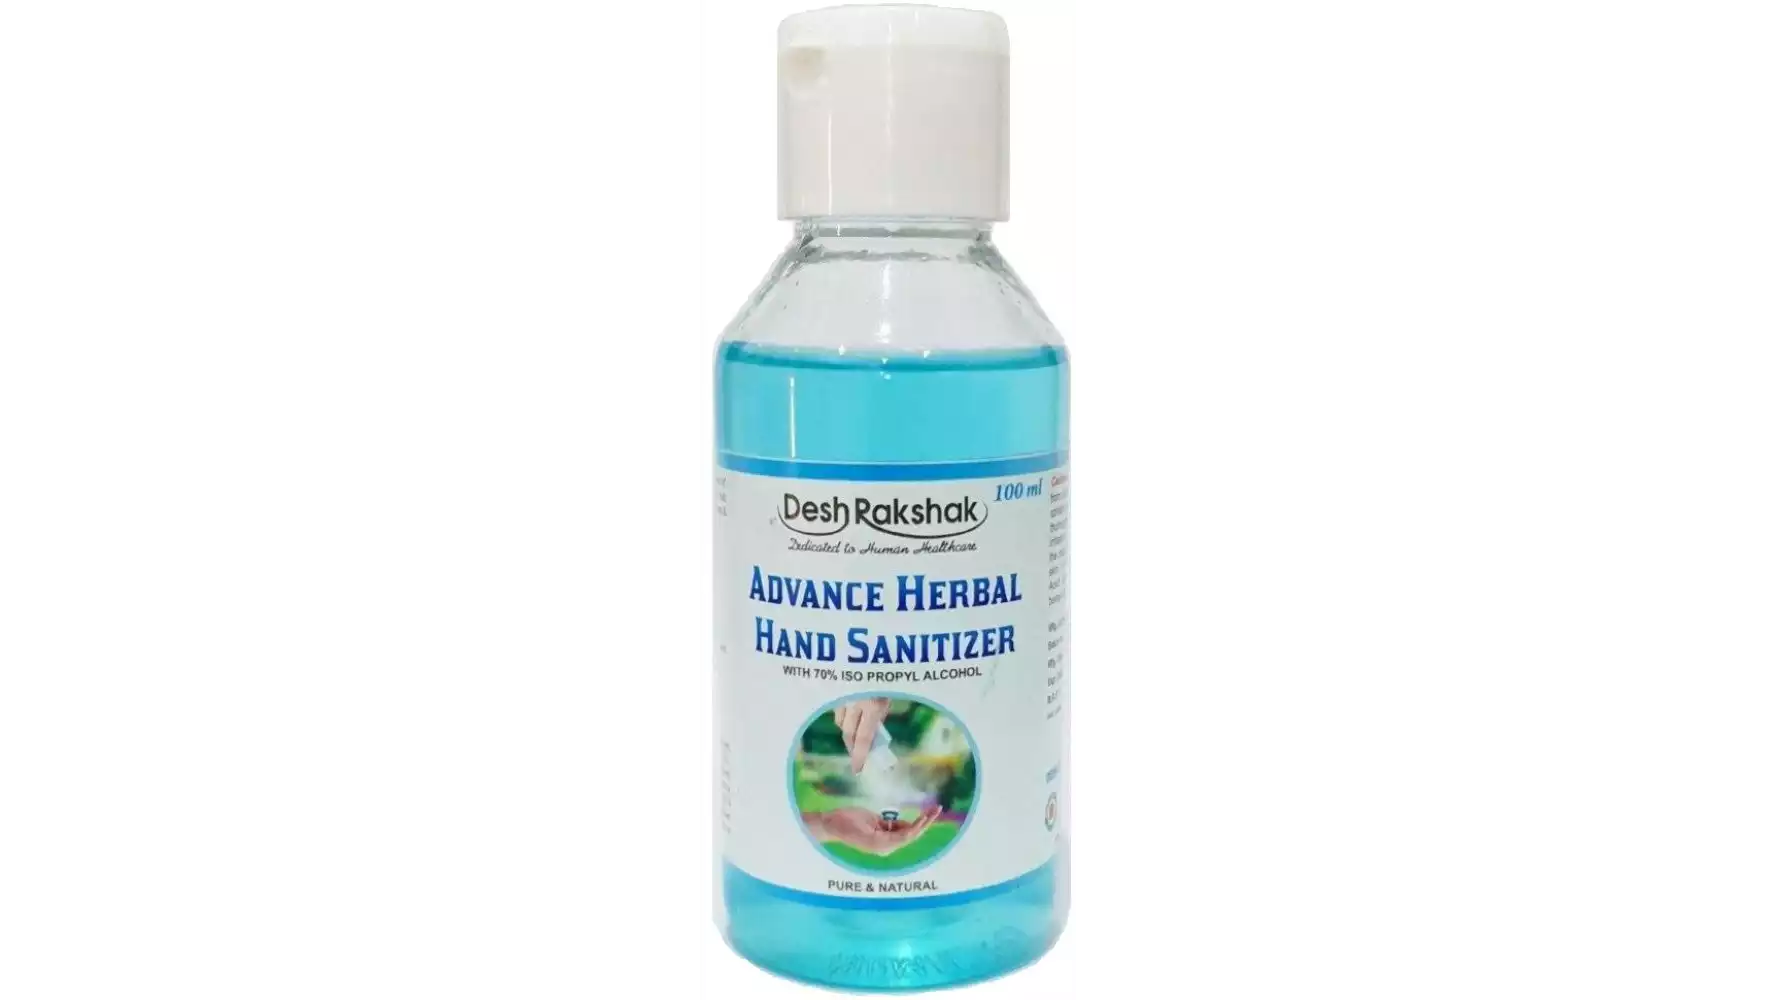 Deshrakshak Advance Herbal Hand Sanitizer (100ml)